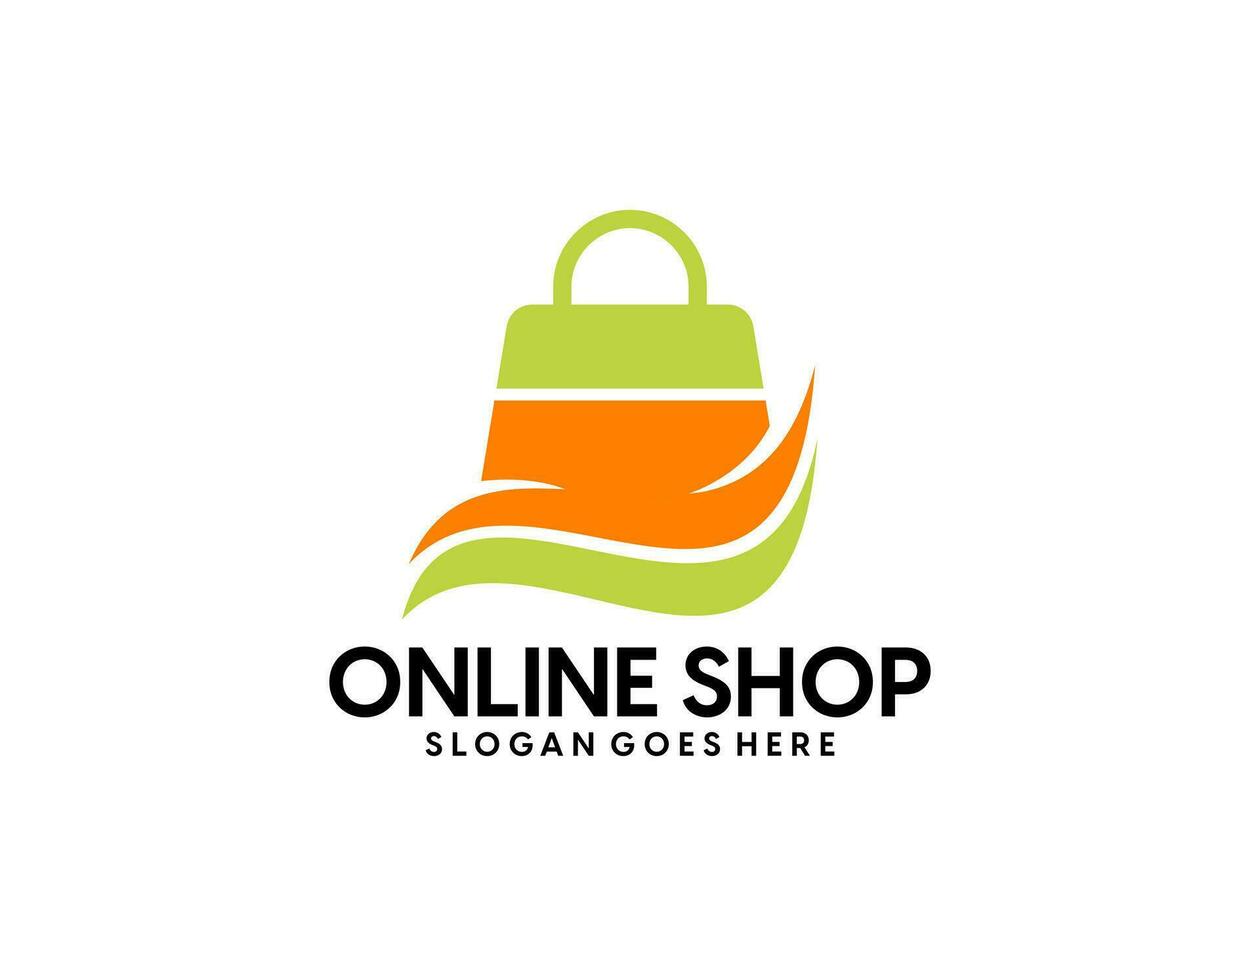 Online shopping logo design template vector